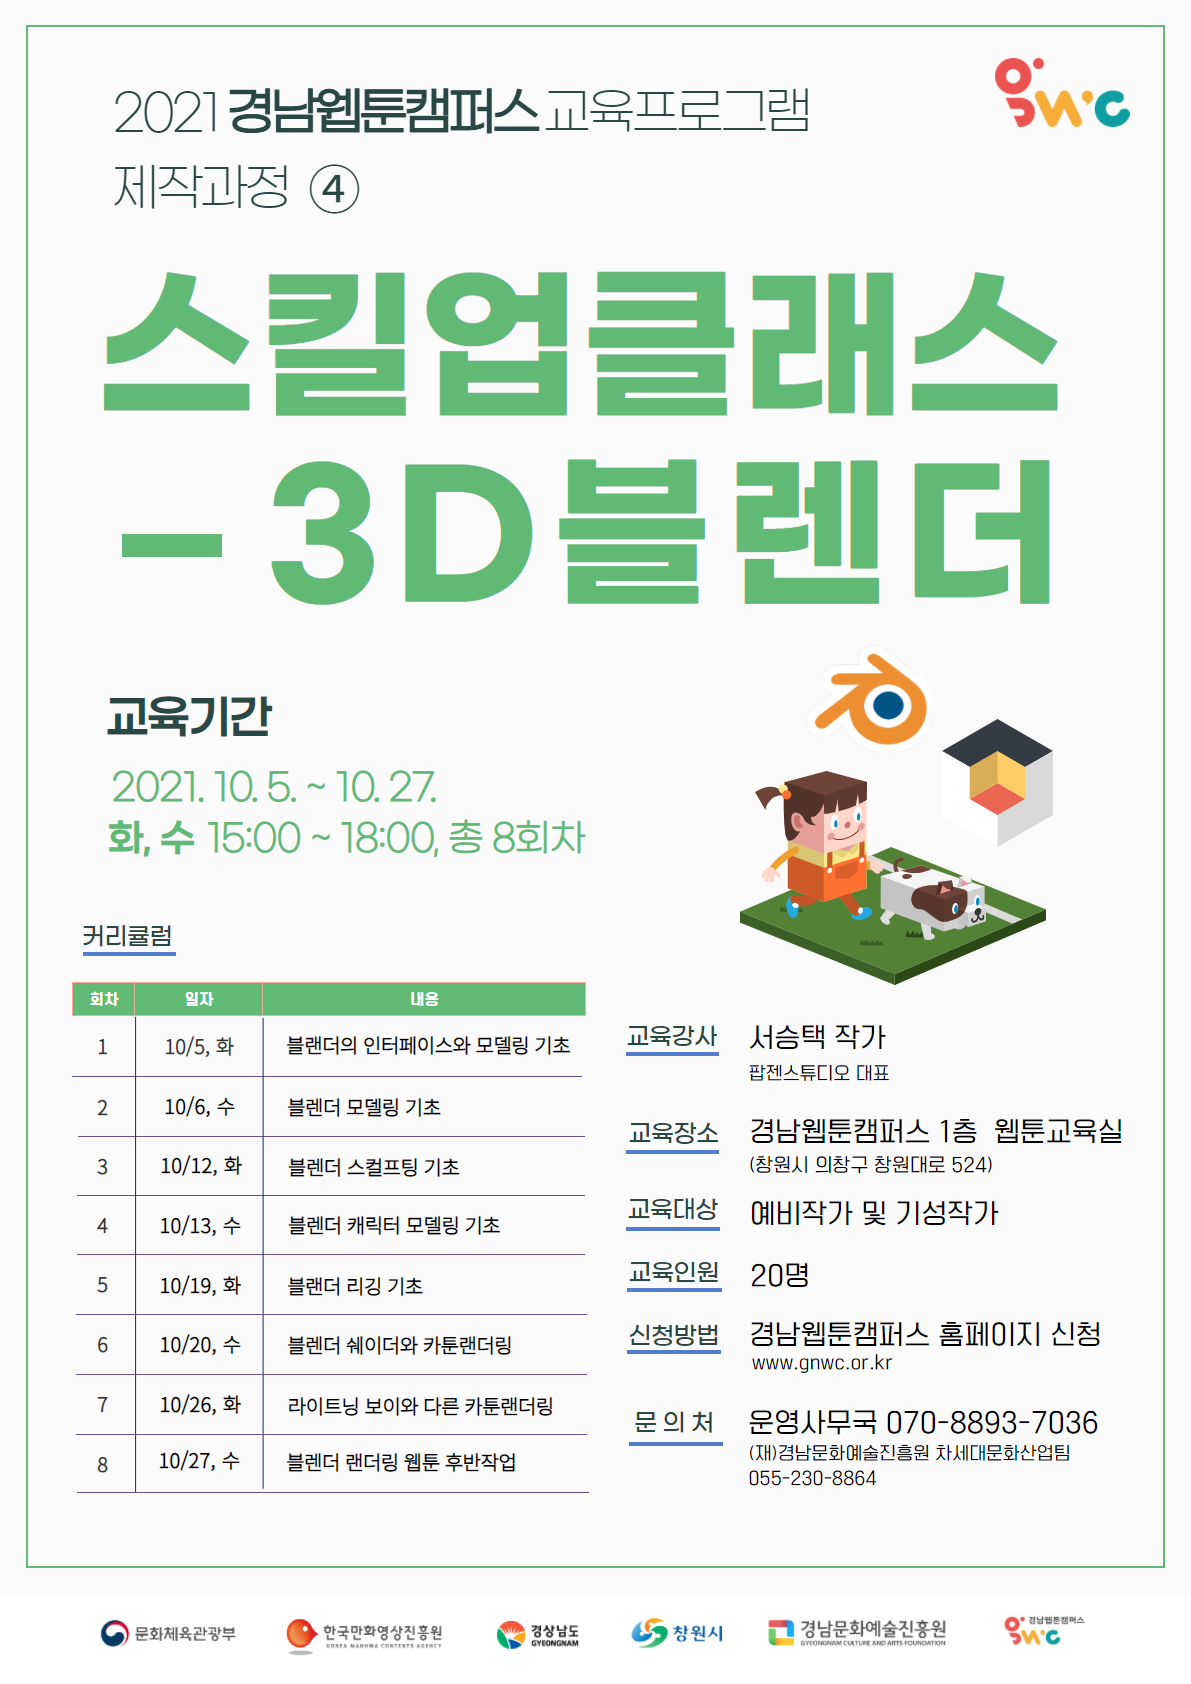 [경남웹툰캠퍼스] 교육프로그램 제작과정4 '스킬업클래스-3D블렌더'